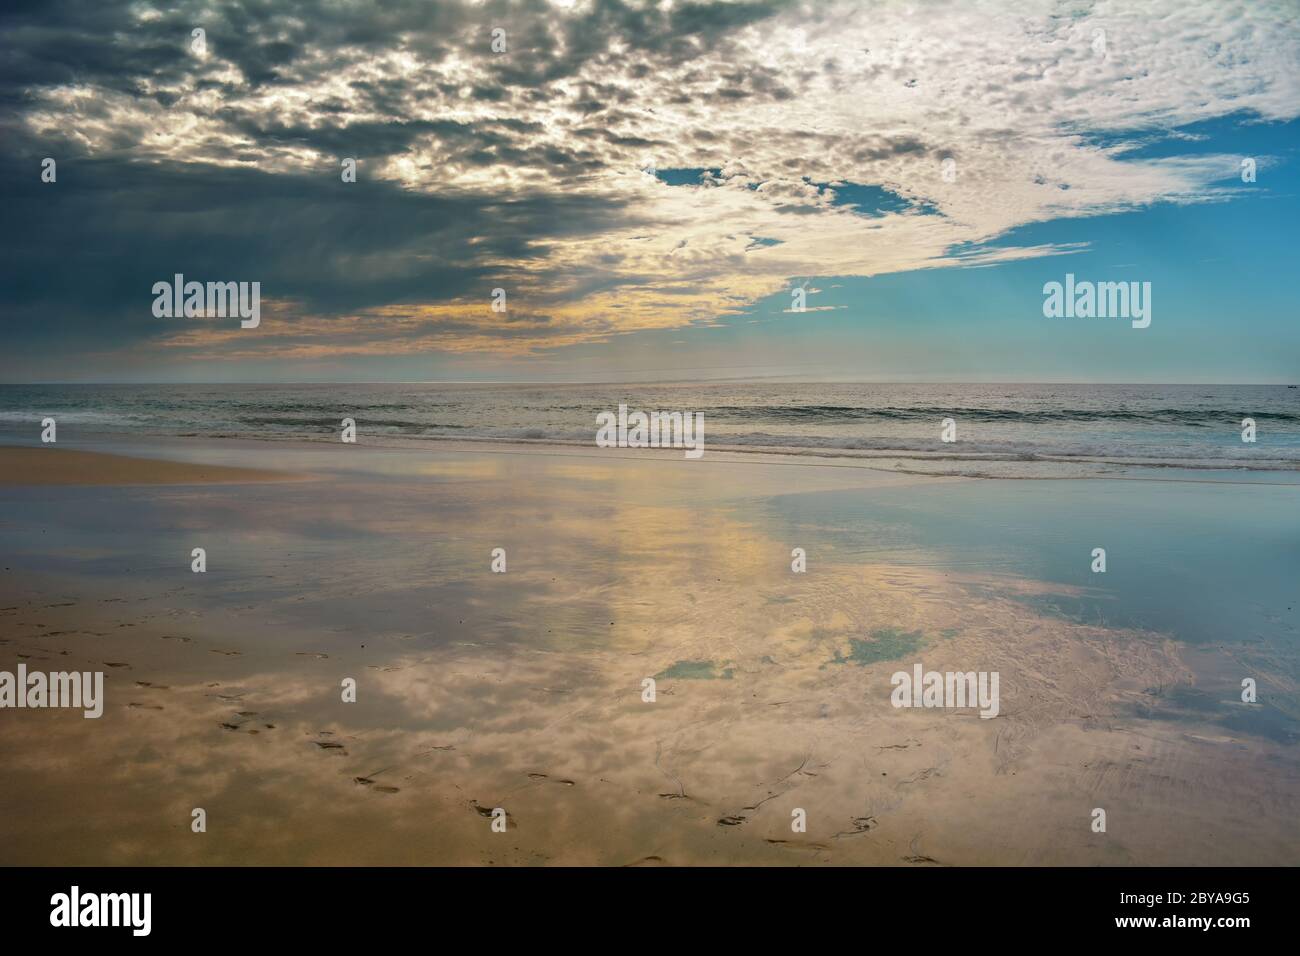 Reflet des nuages sur l'océan, marchant seul sur la plage Banque D'Images